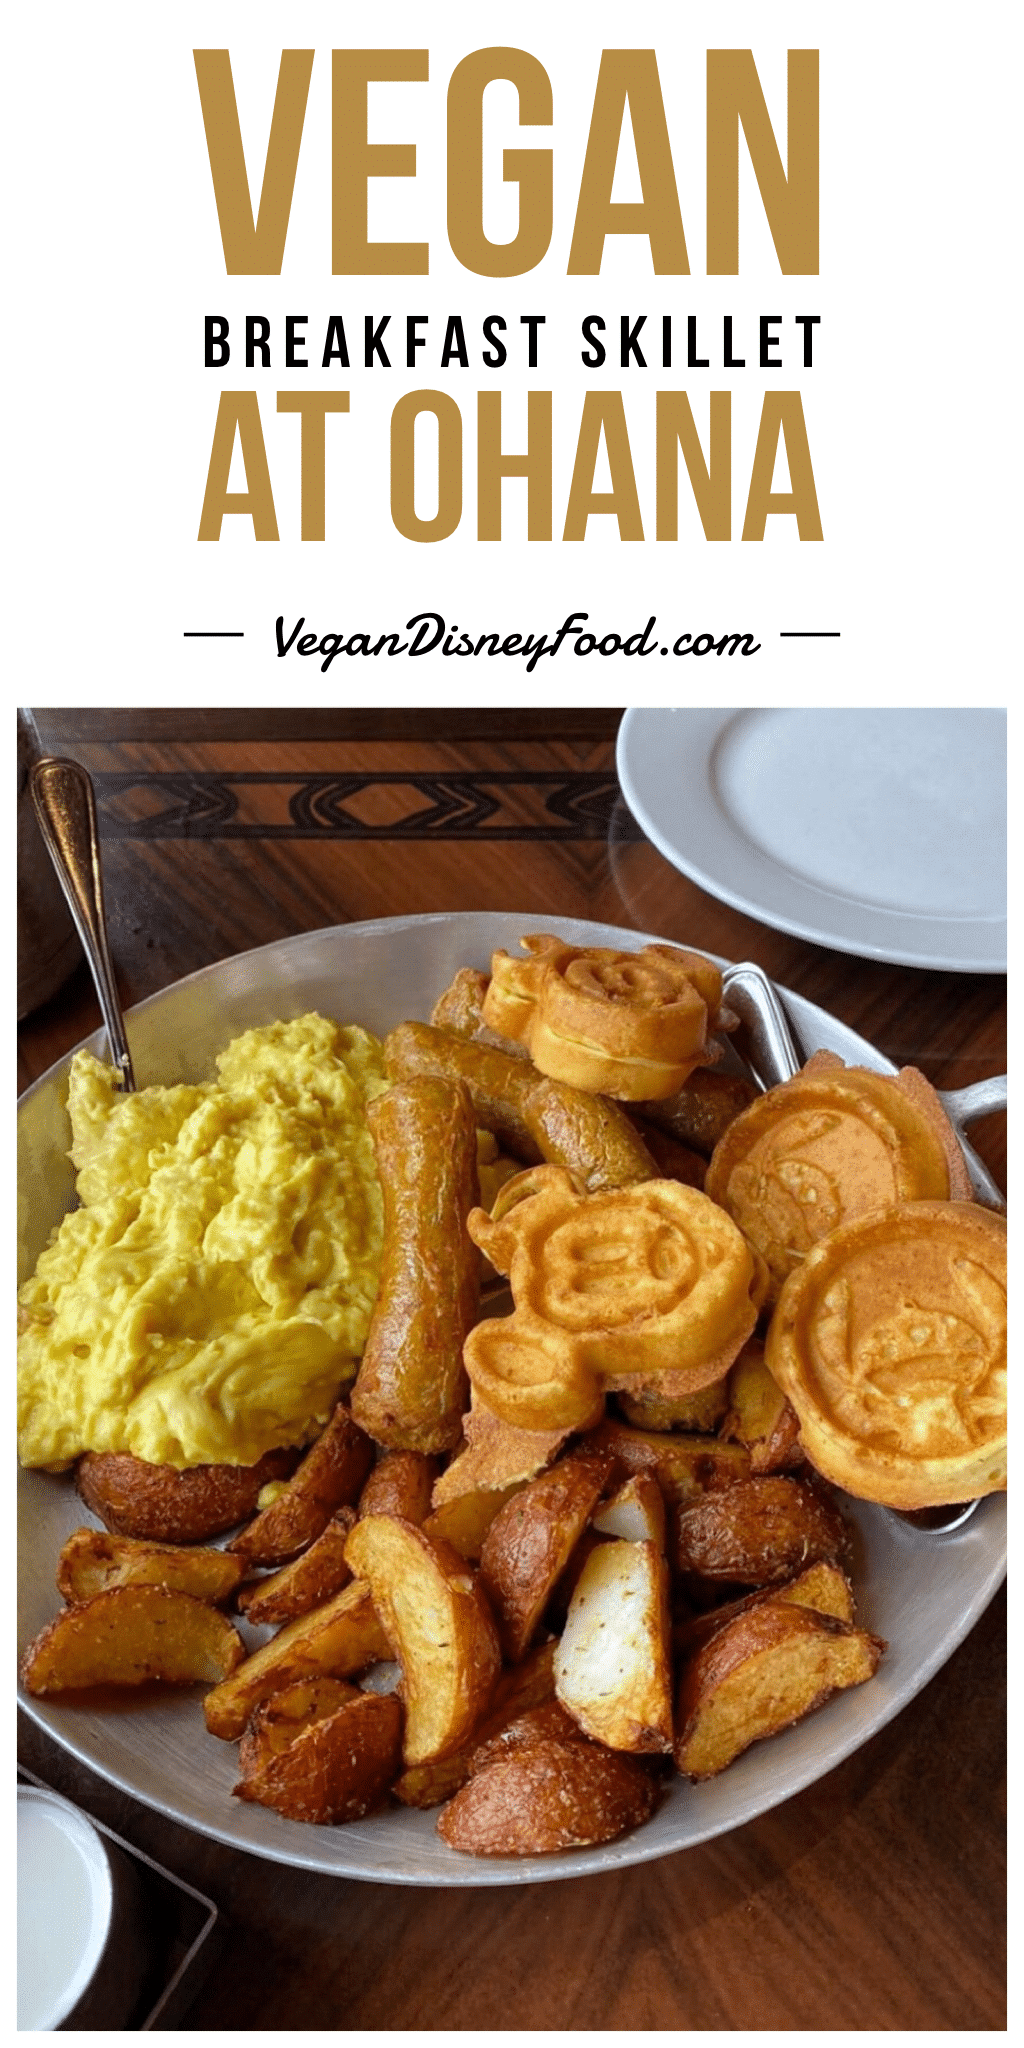 Vegan Breakfast Skillet at Ohana in Disney’s Polynesian Village Resort at Walt Disney World